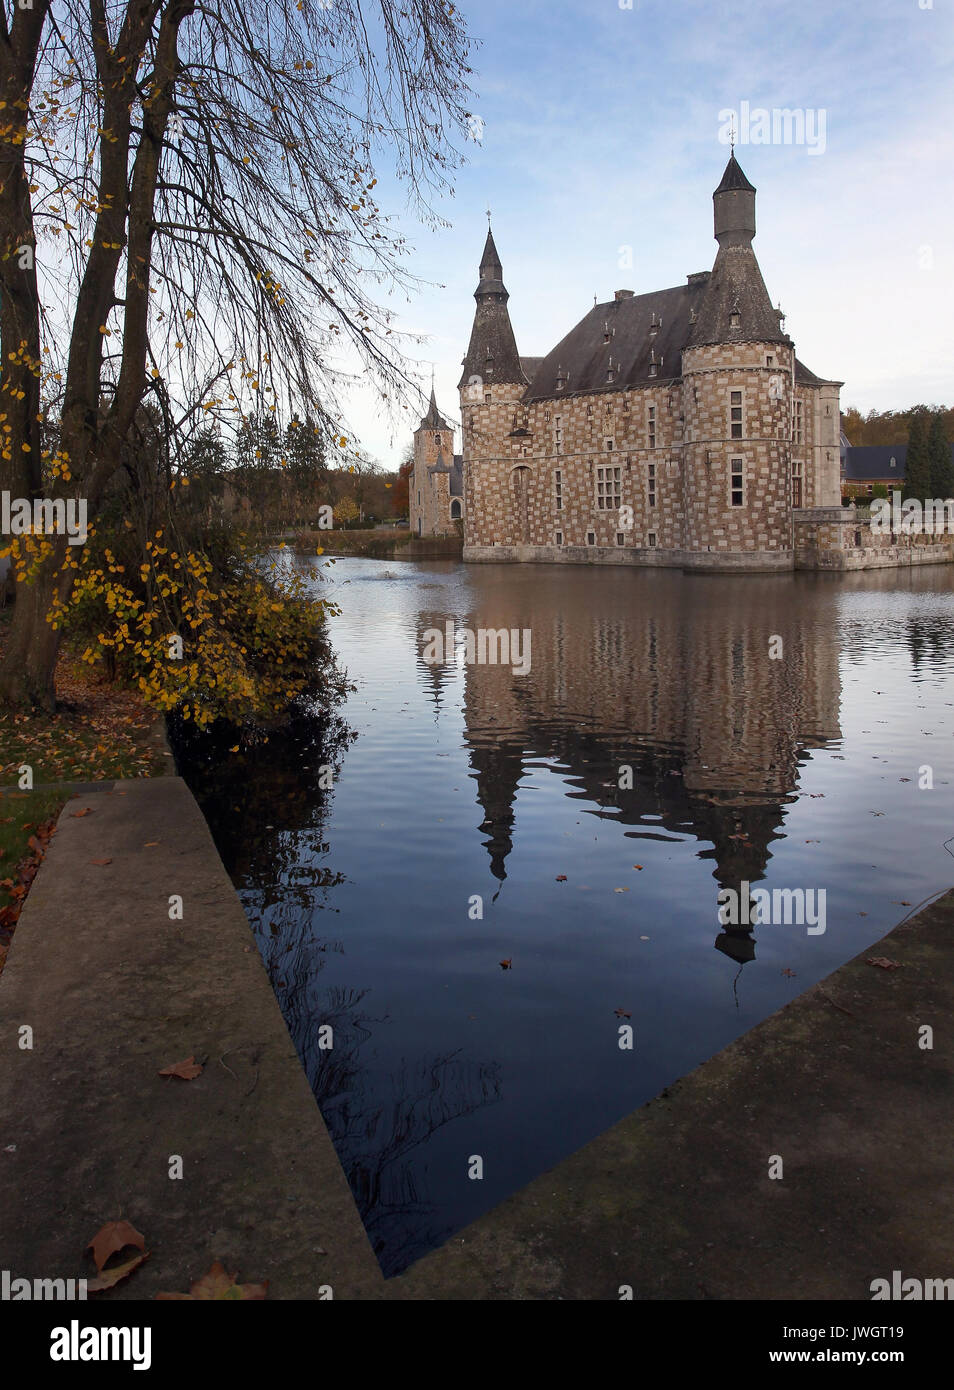 Château de Jehay Jehay Château ou est un château situé dans la municipalité d'Amay, dans la province de Liège en Belgique.wallonie. Banque D'Images